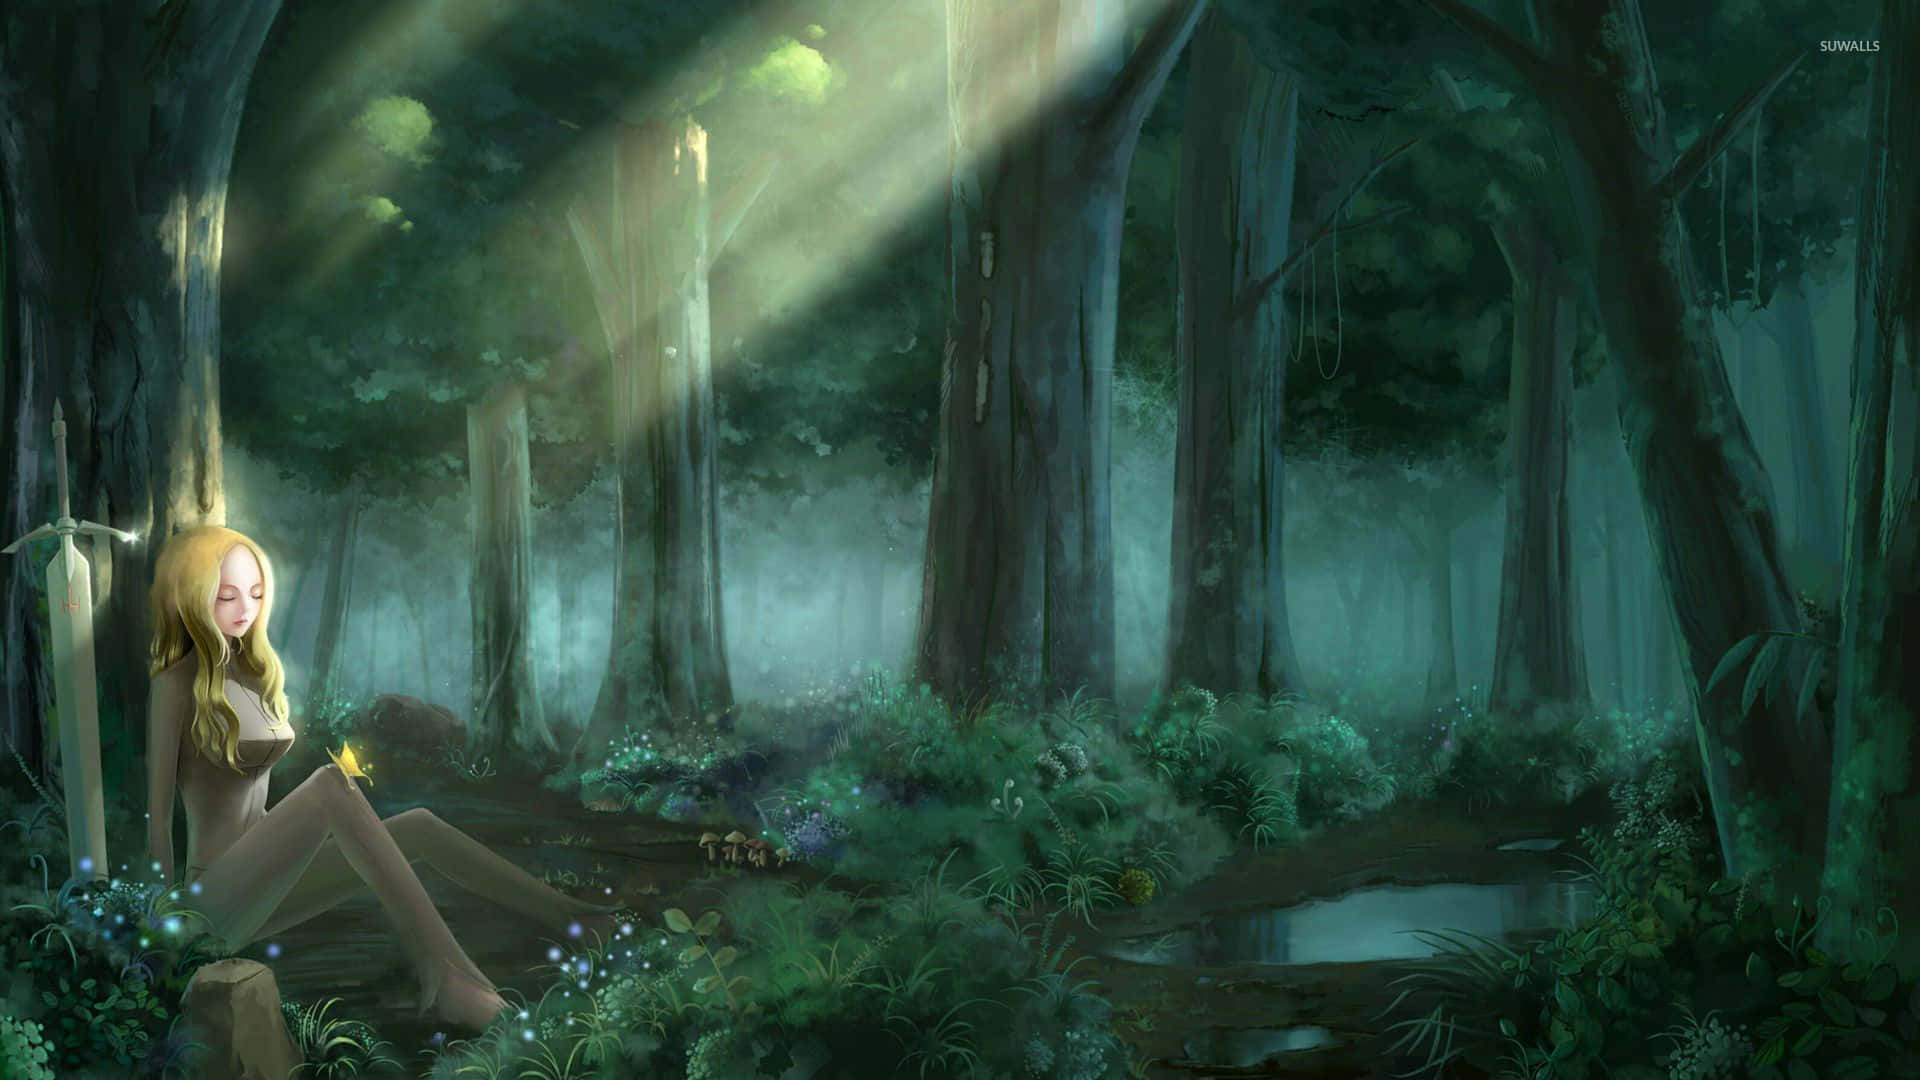 Disfrutade La Atmósfera Mágica De La Naturaleza En Este Bosque De Anime. Fondo de pantalla